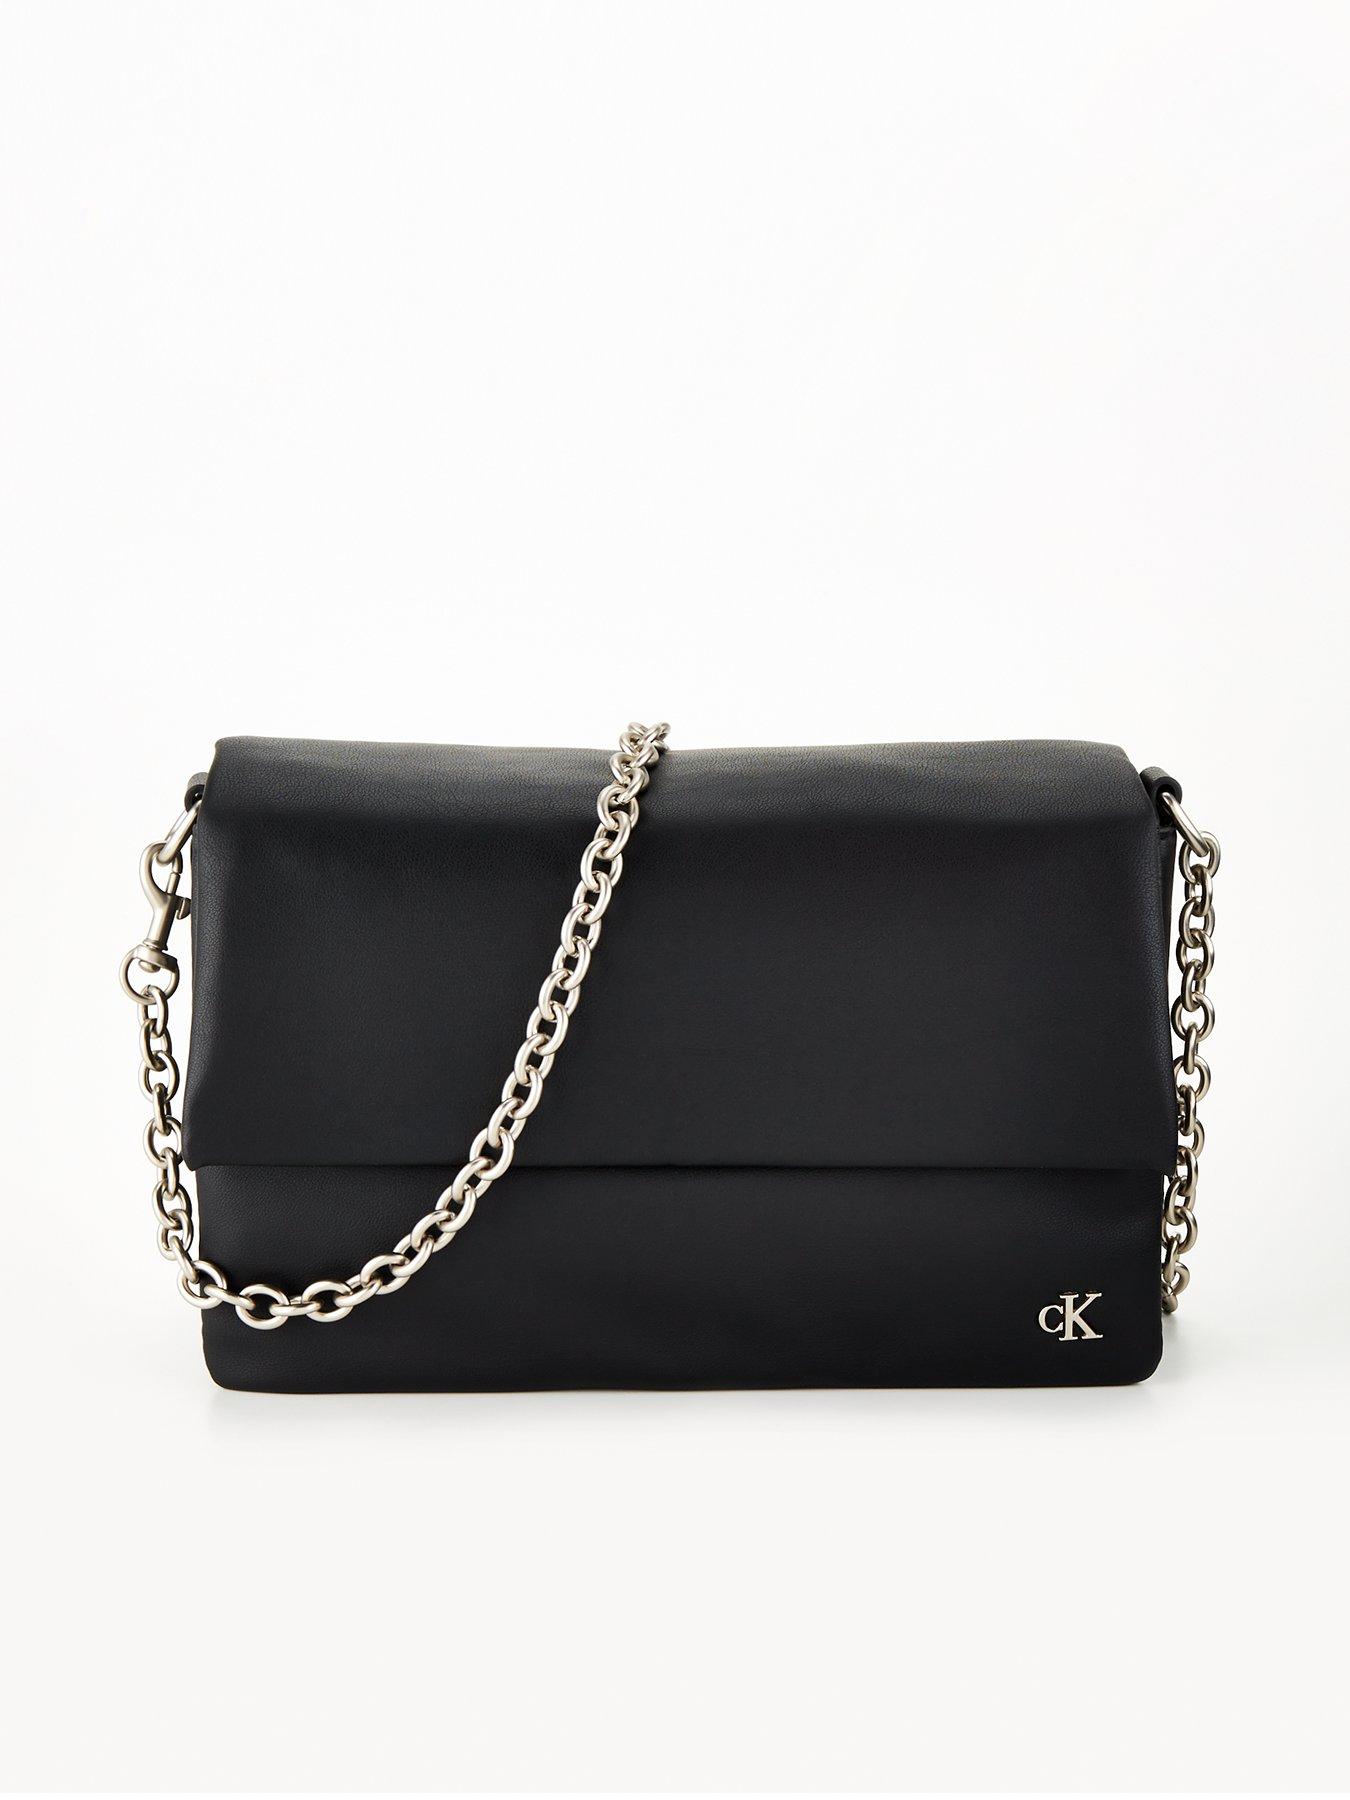 Calvin Klein Kasie Mini Bag Brown/Khaki/Flame Orange One Size: Handbags:  Amazon.com